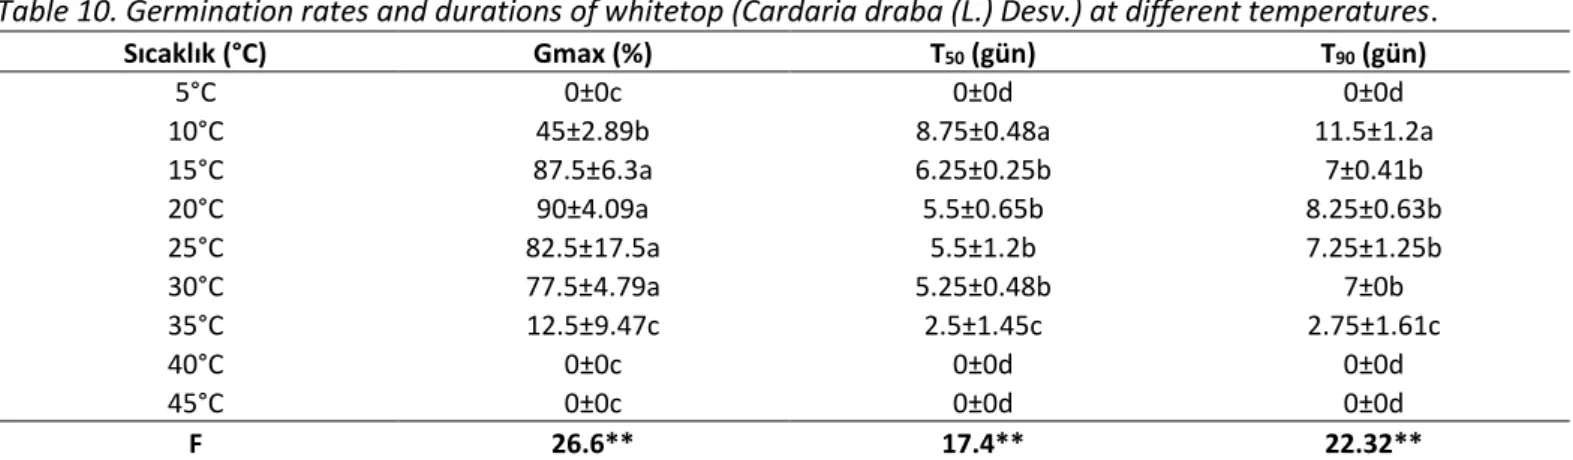 Çizelge 10. Kır teresi (Cardaria draba (L.) Desv.)’nin farklı sıcaklık derecelerindeki çimlenme oranları ve süreleri (gün)  Table 10